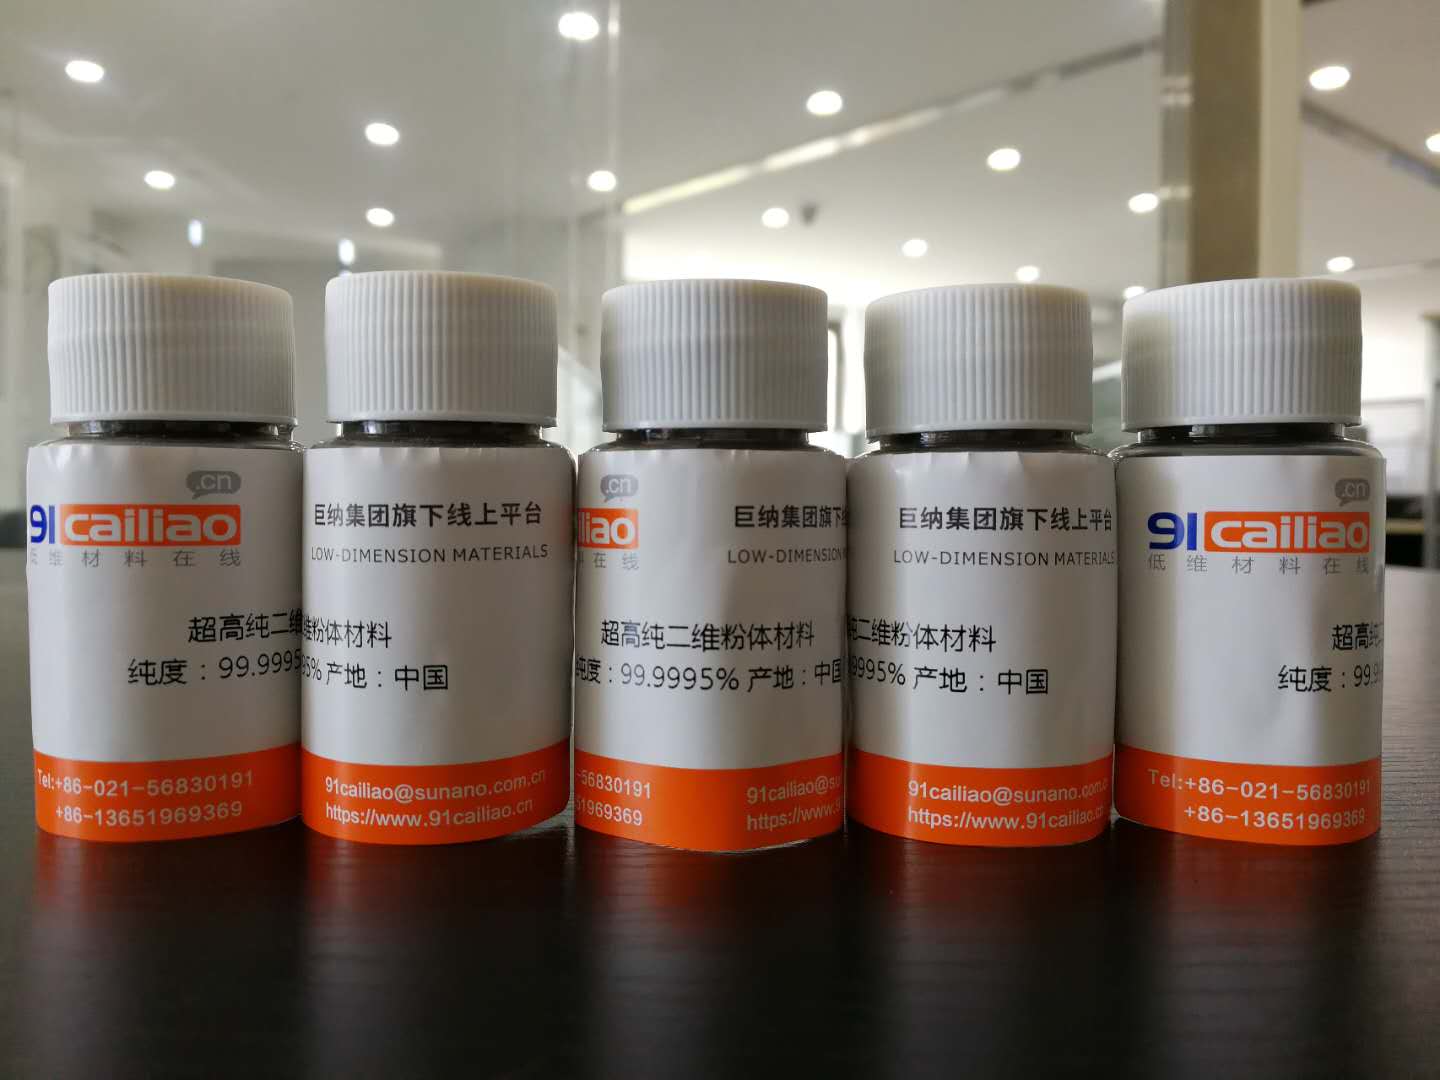 高纯GeSe粉末 高纯硒化锗粉末(1g)